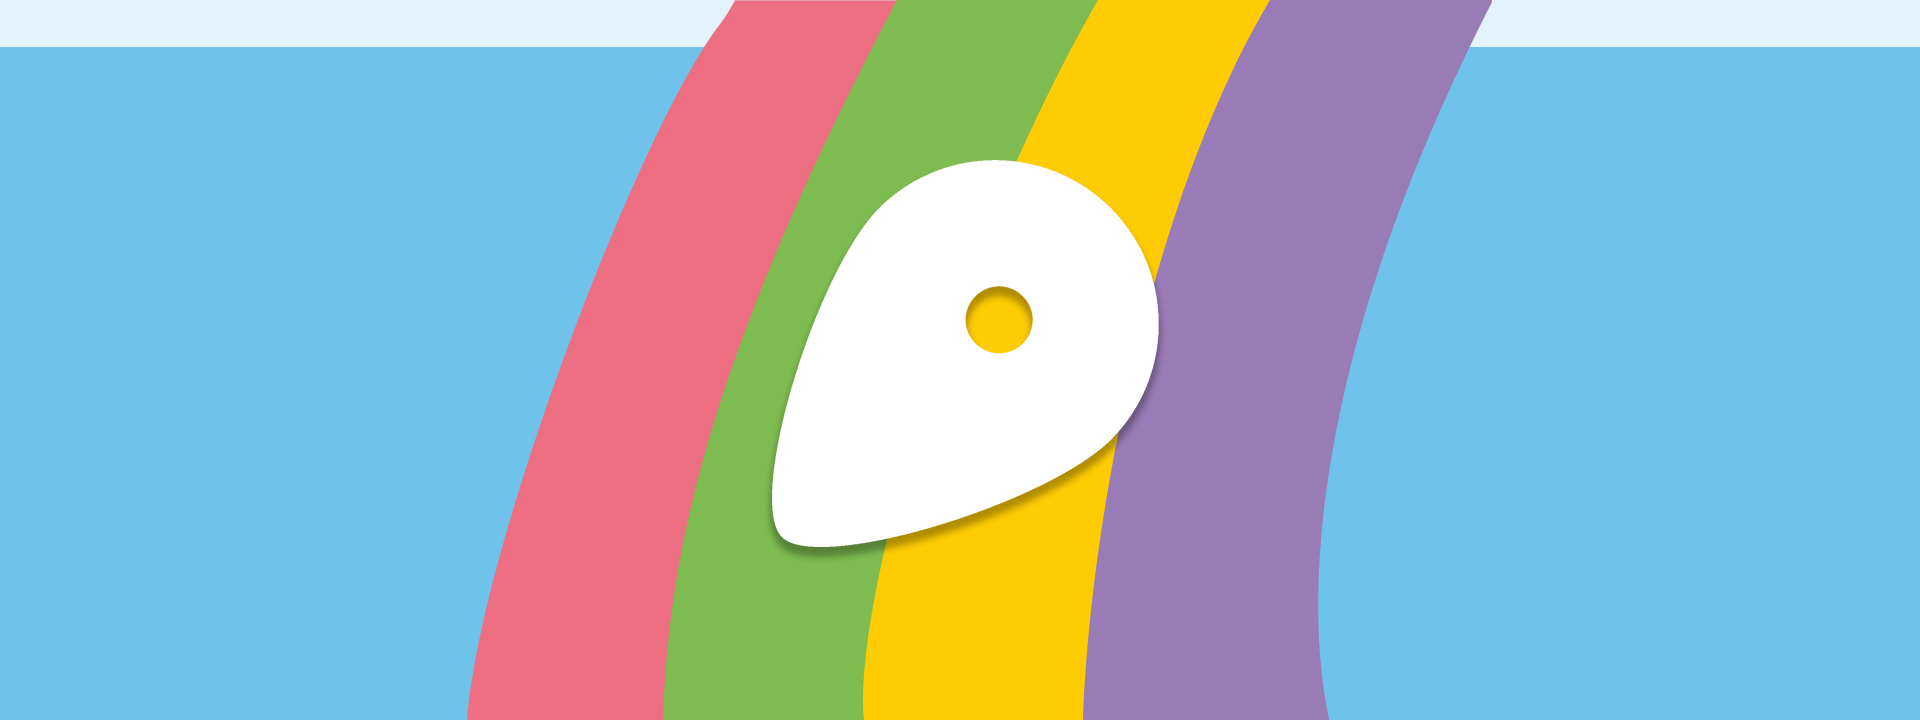 Grafik: Das aROund-Logo vor den vier Farben unserer Lokalredaktionen, ähnlich wie bei einem Regenbogen angeordnet